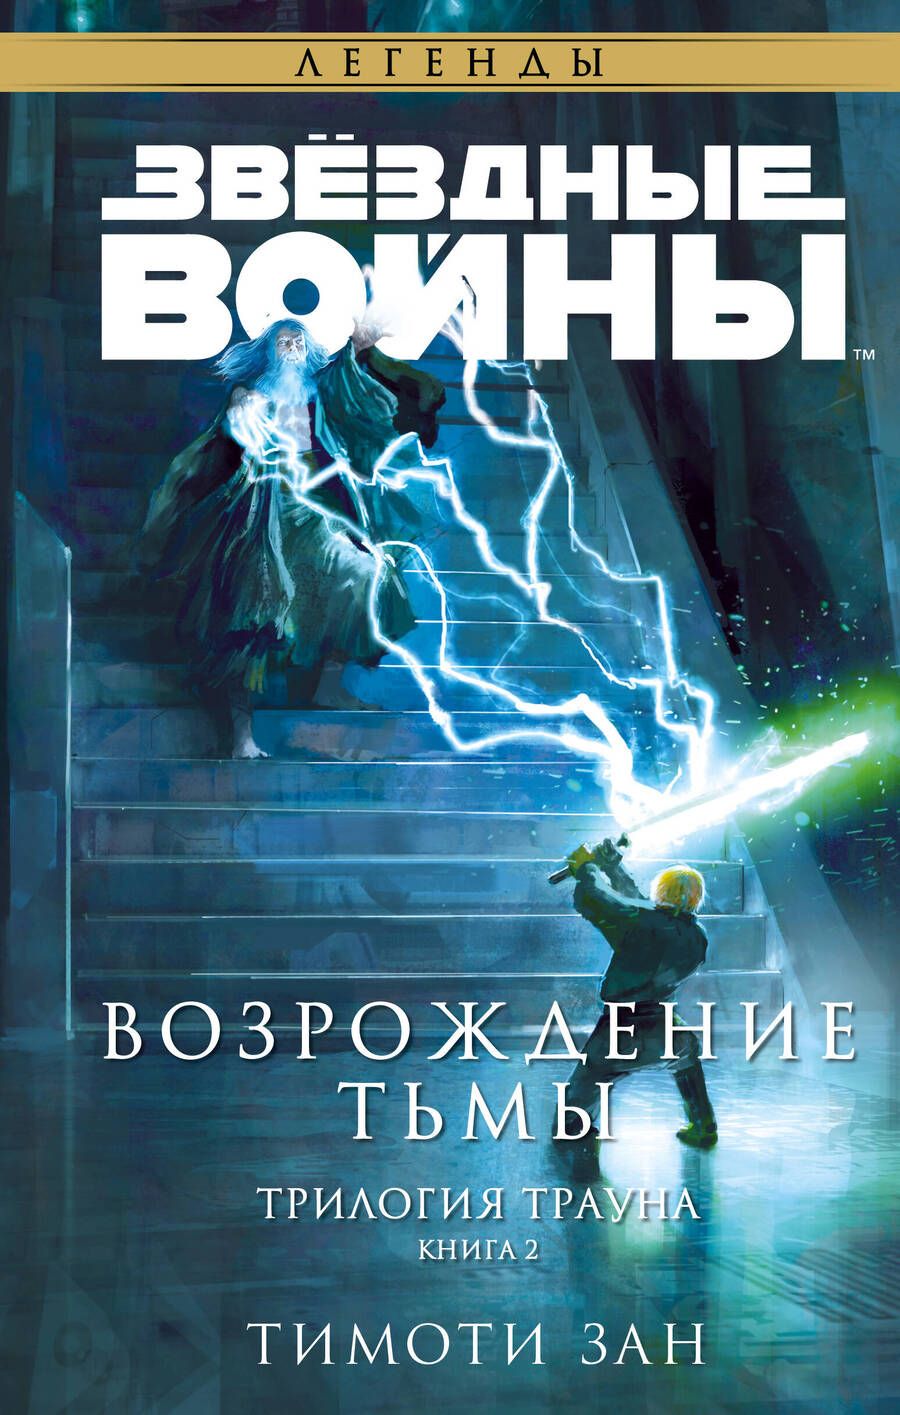 Обложка книги "Зан: Звёздные войны. Траун. Возрождение тьмы"